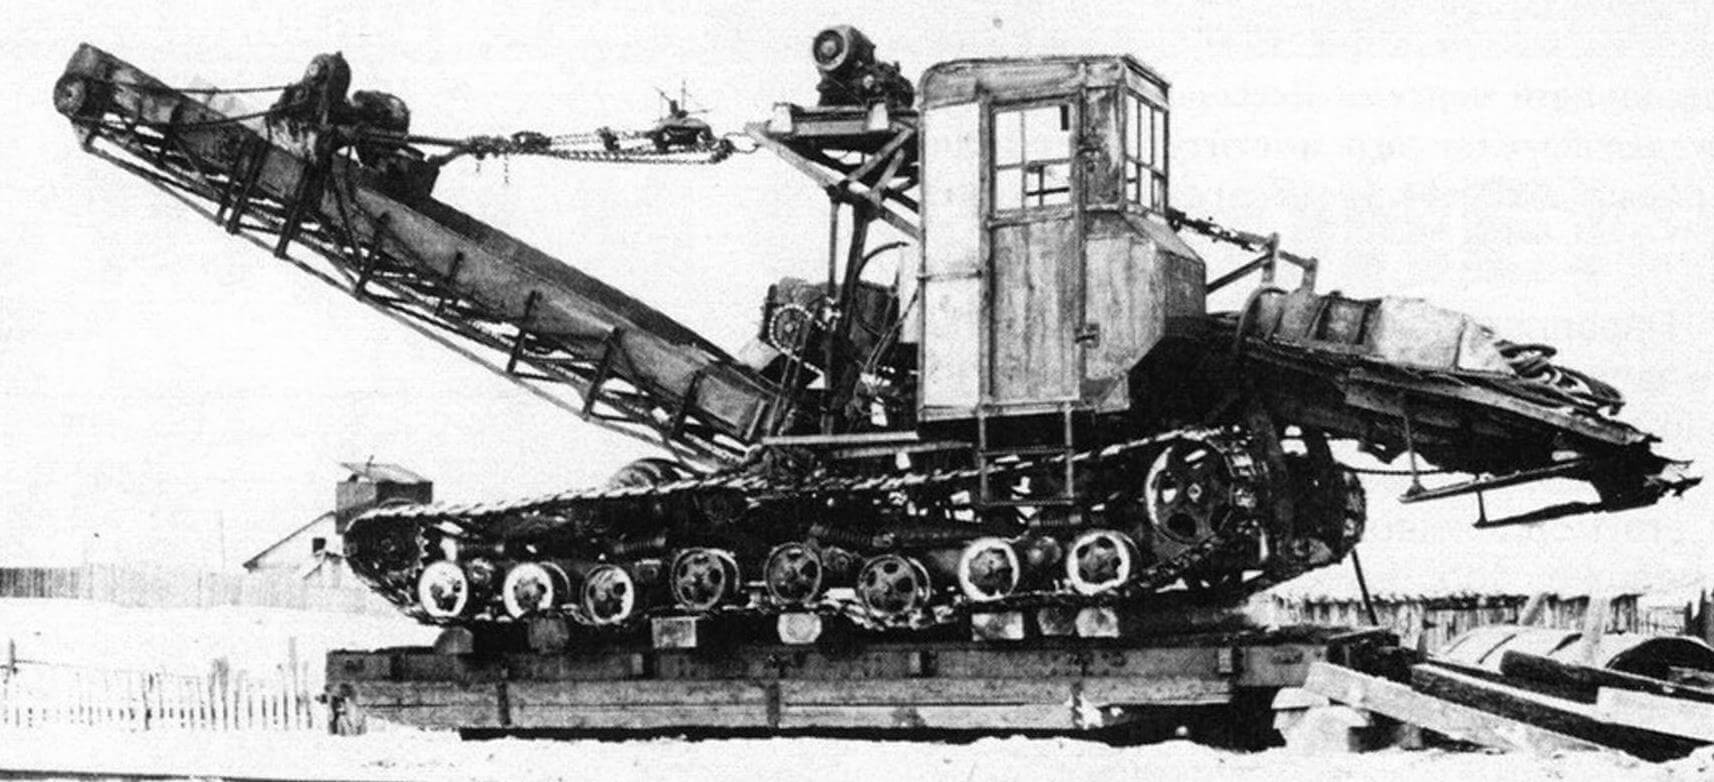 Экспериментальный торфопогрузчик УКЛ, спроектированнный в 1940 году на базе трактора СТЗ-8, был оснащен четырьмя электродвигателями